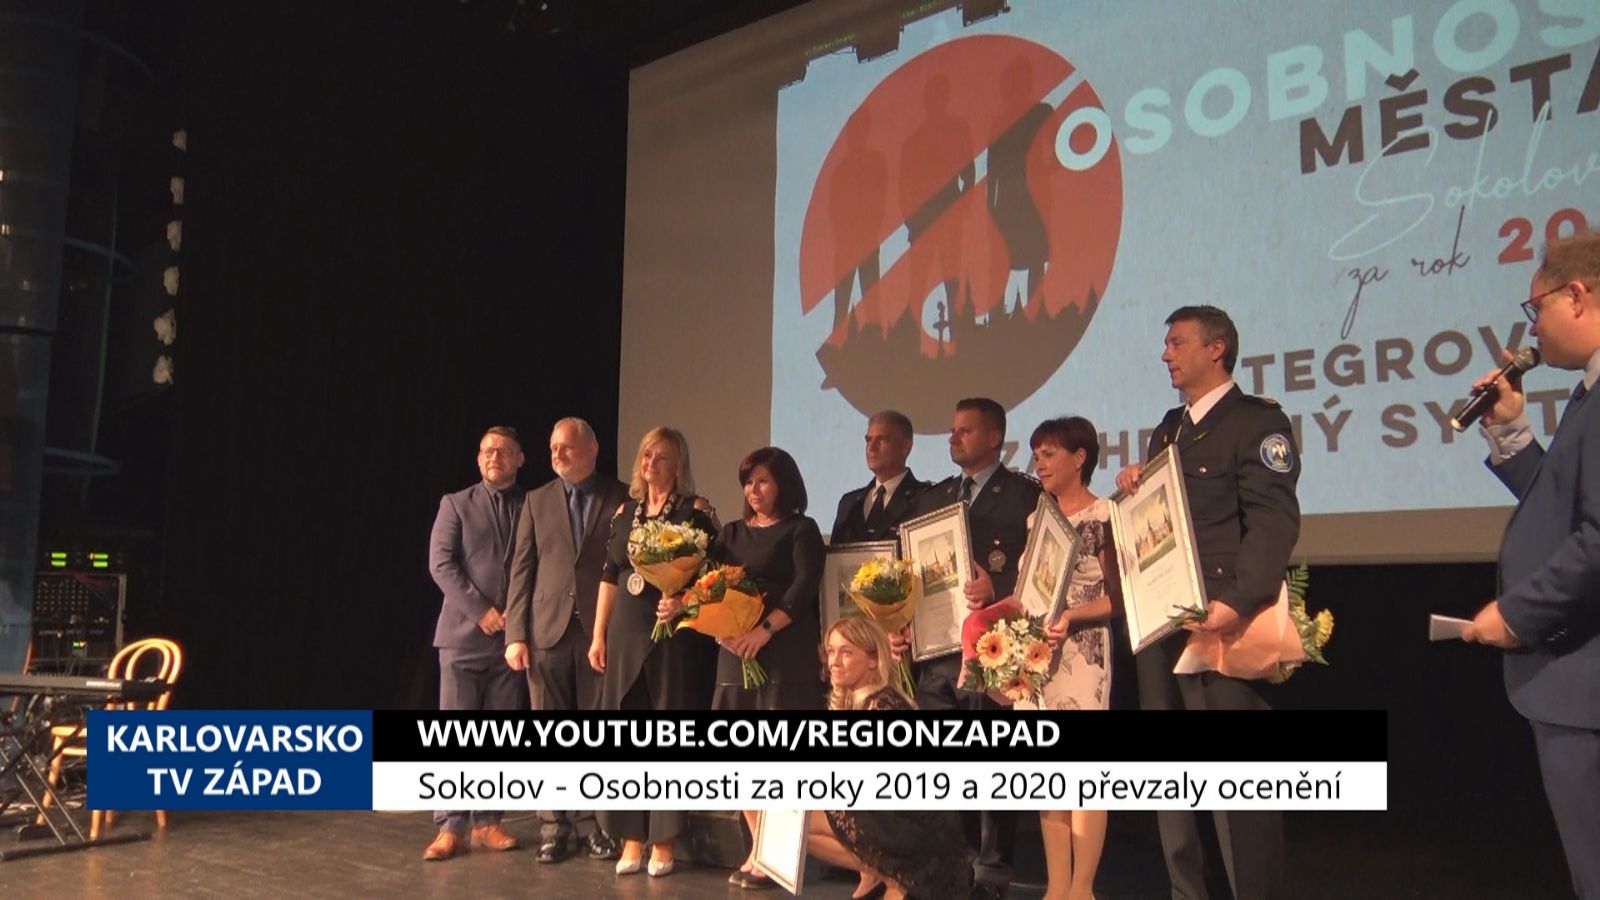 Sokolov: Osobnosti za roky 2019 a 2020 převzaly ocenění (TV Západ)